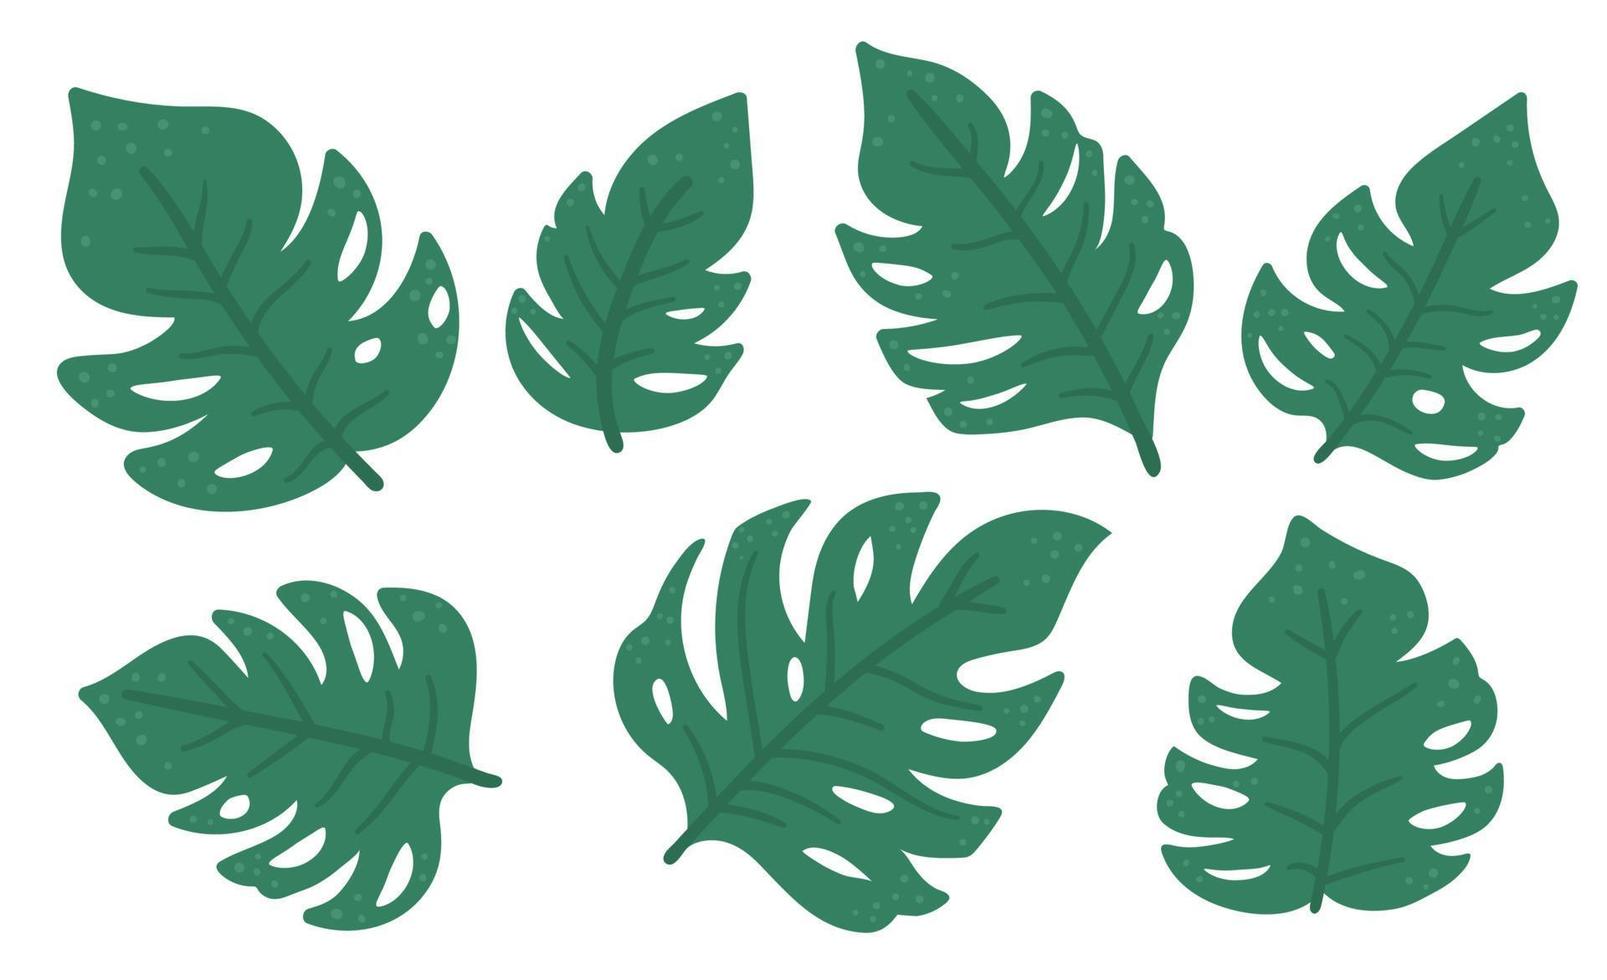 ClipArt di foglie di monstera tropicale vettoriale. illustrazione del fogliame della giungla. piante esotiche piatte disegnate a mano isolate su sfondo bianco. immagine luminosa del verde estivo infantile. vettore